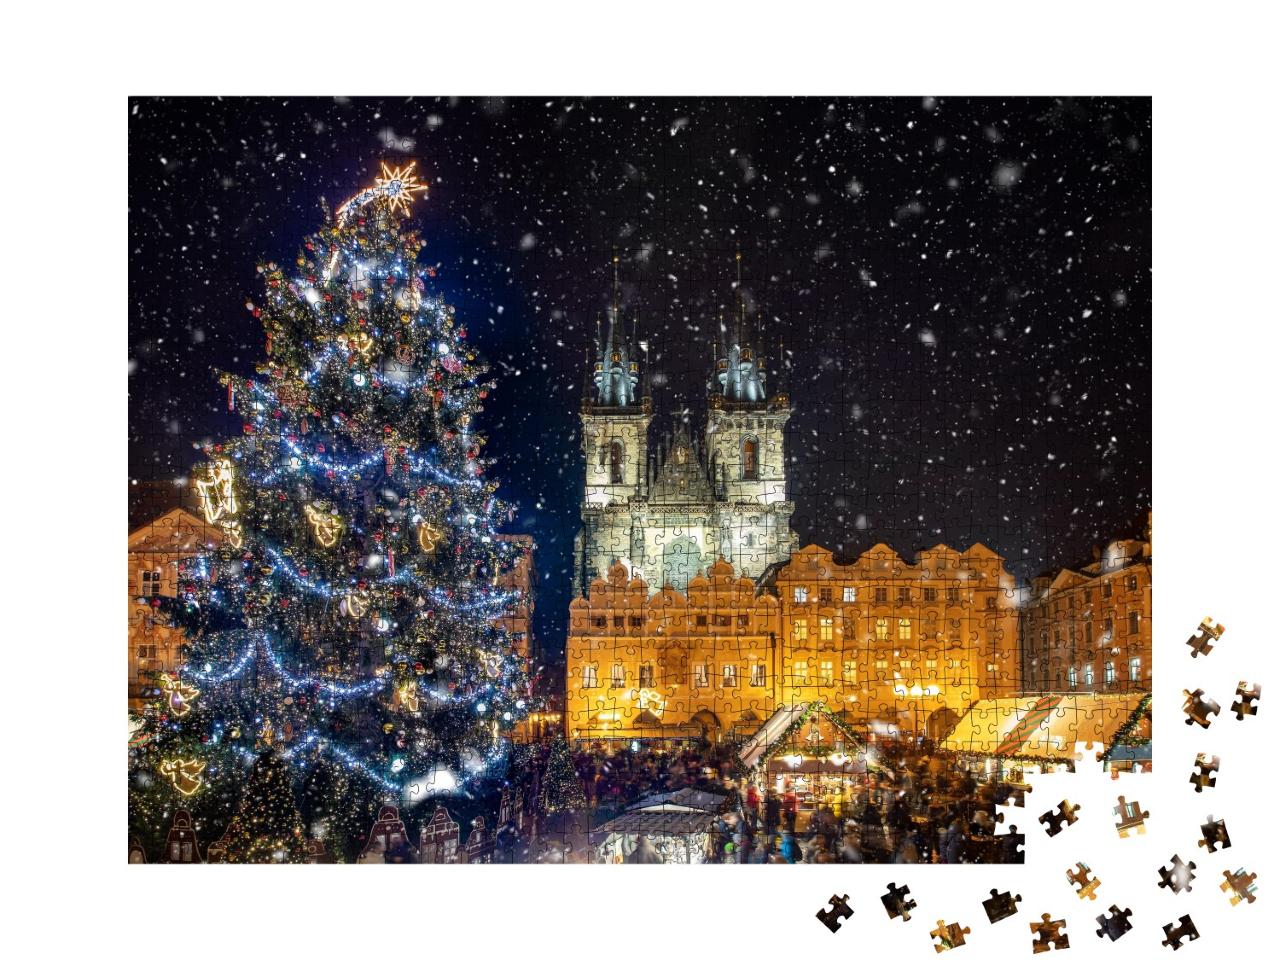 Puzzle de 1000 pièces « Belle vue sur la place de la vieille ville avec le marché de Noël, Prague de nuit »